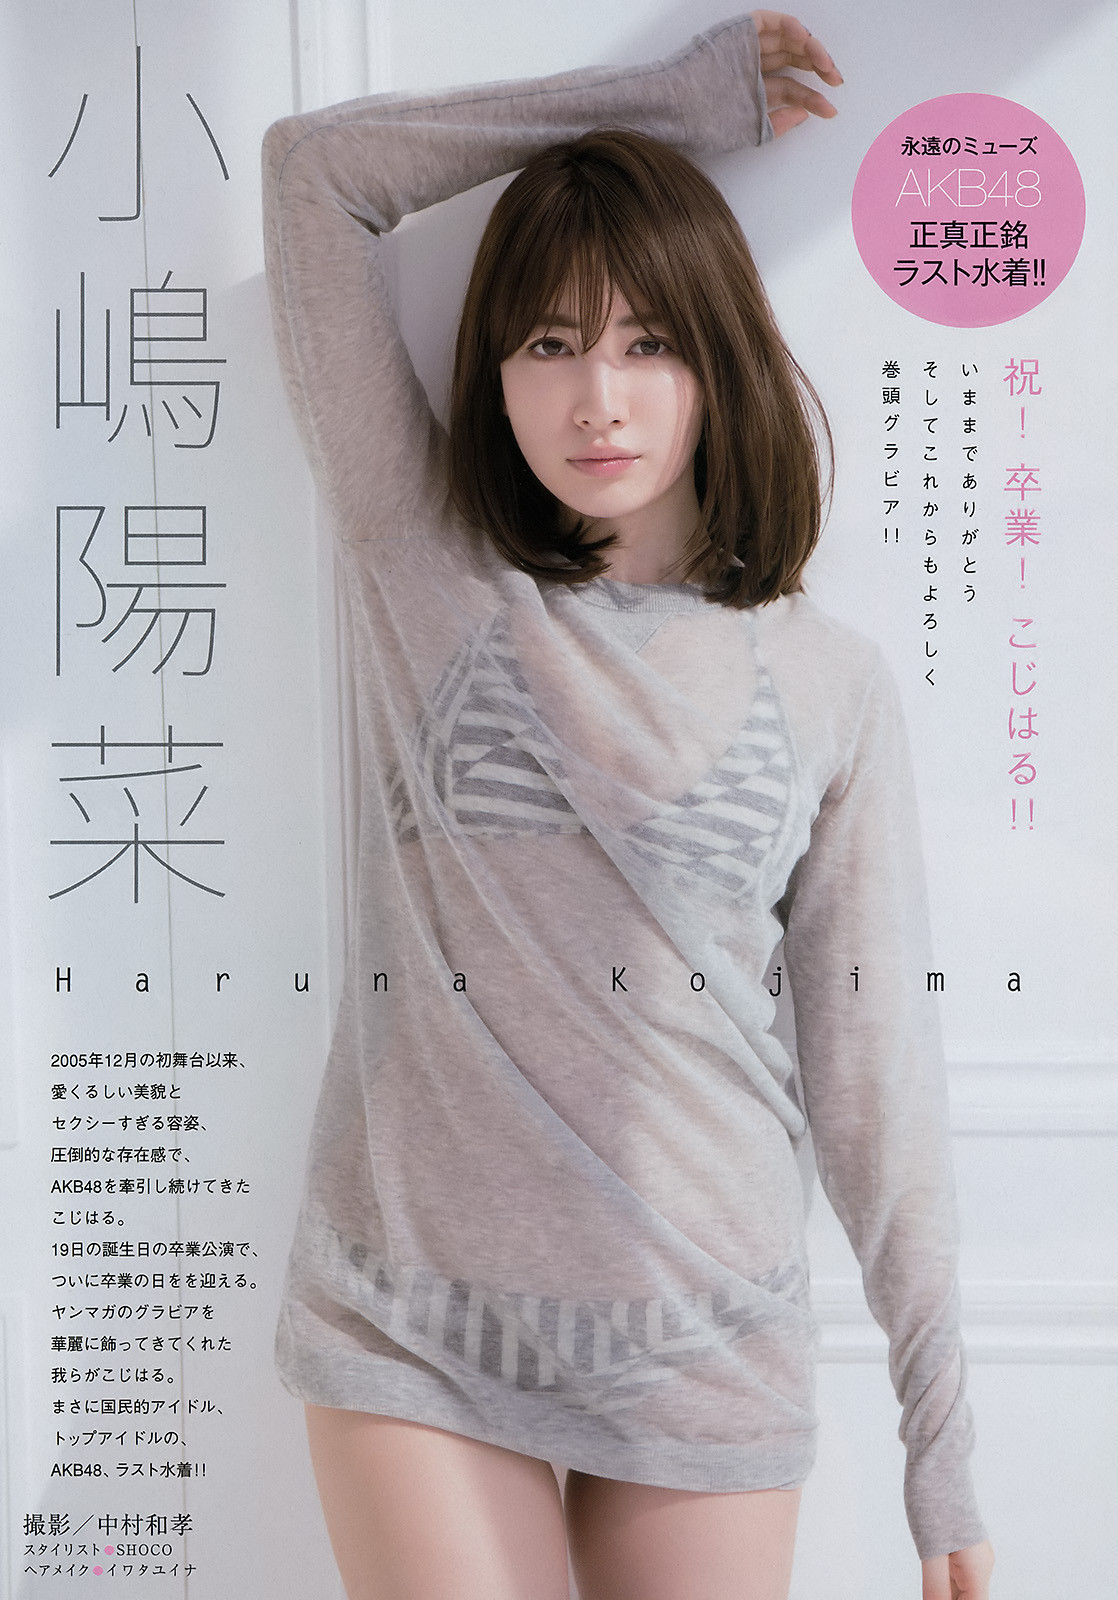 ã€ŒYoung Magazineã€ No.20 2017 #AKB48 #å°å¶‹é™½èœ